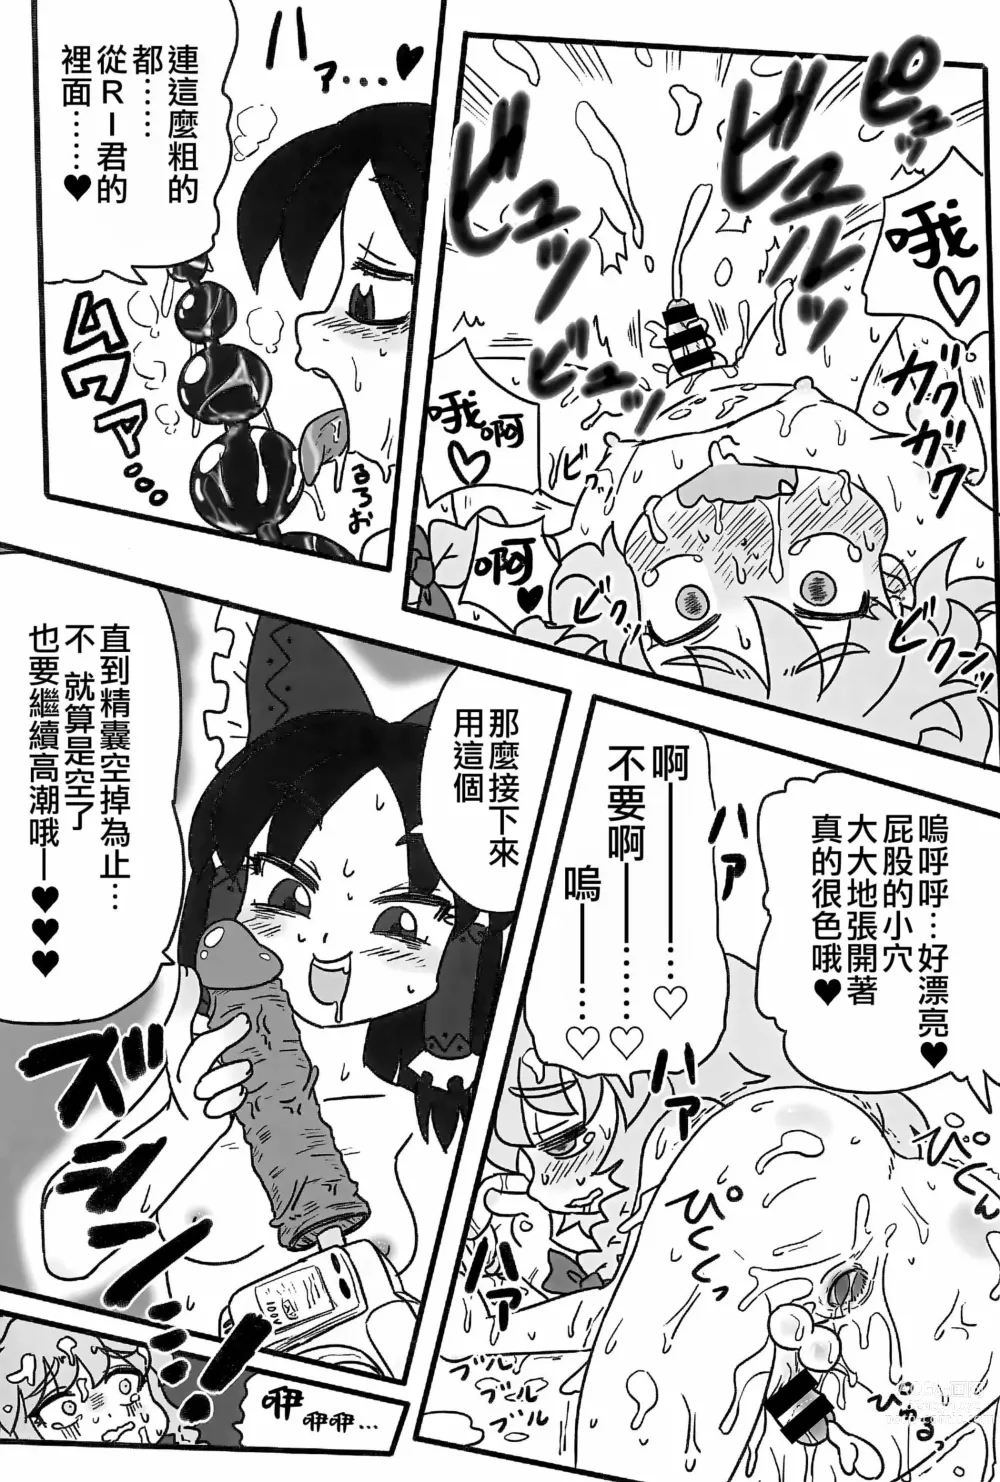 Page 190 of doujinshi Otona no Cookie ~Black & White~